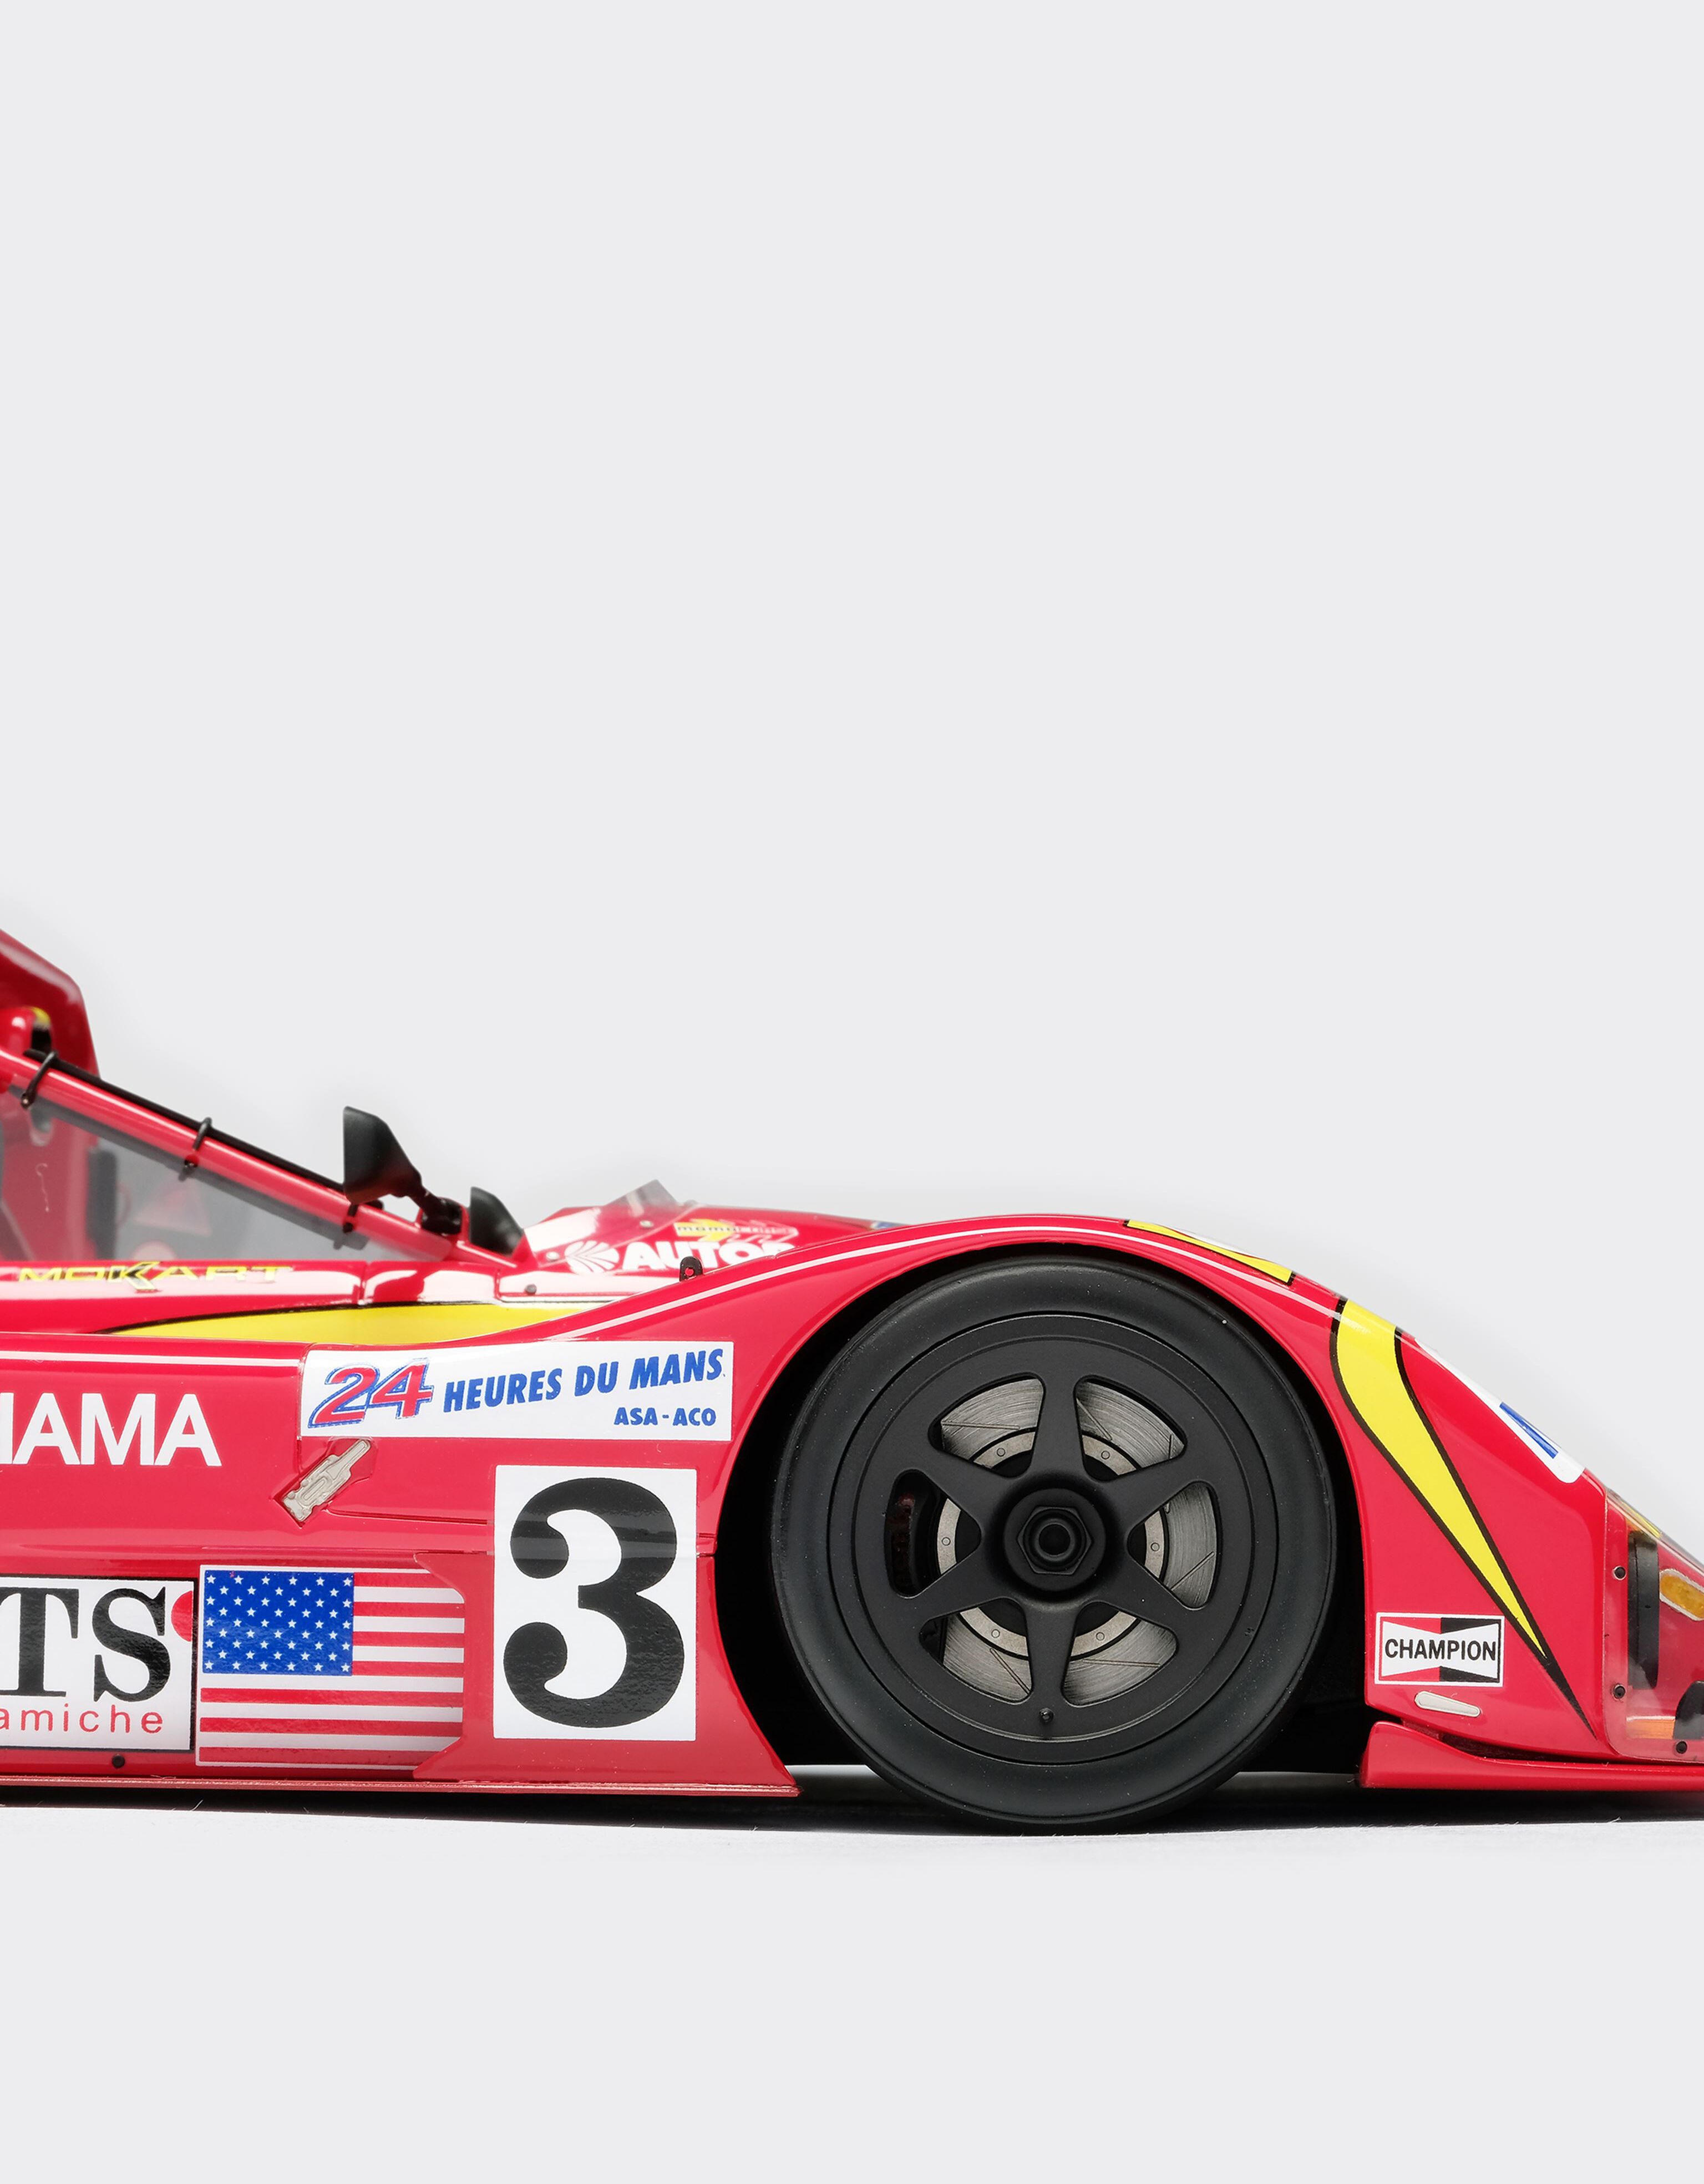 Ferrari Modèle réduit Ferrari 333SP Le Mans à l’échelle 1/18 Rouge L7589f